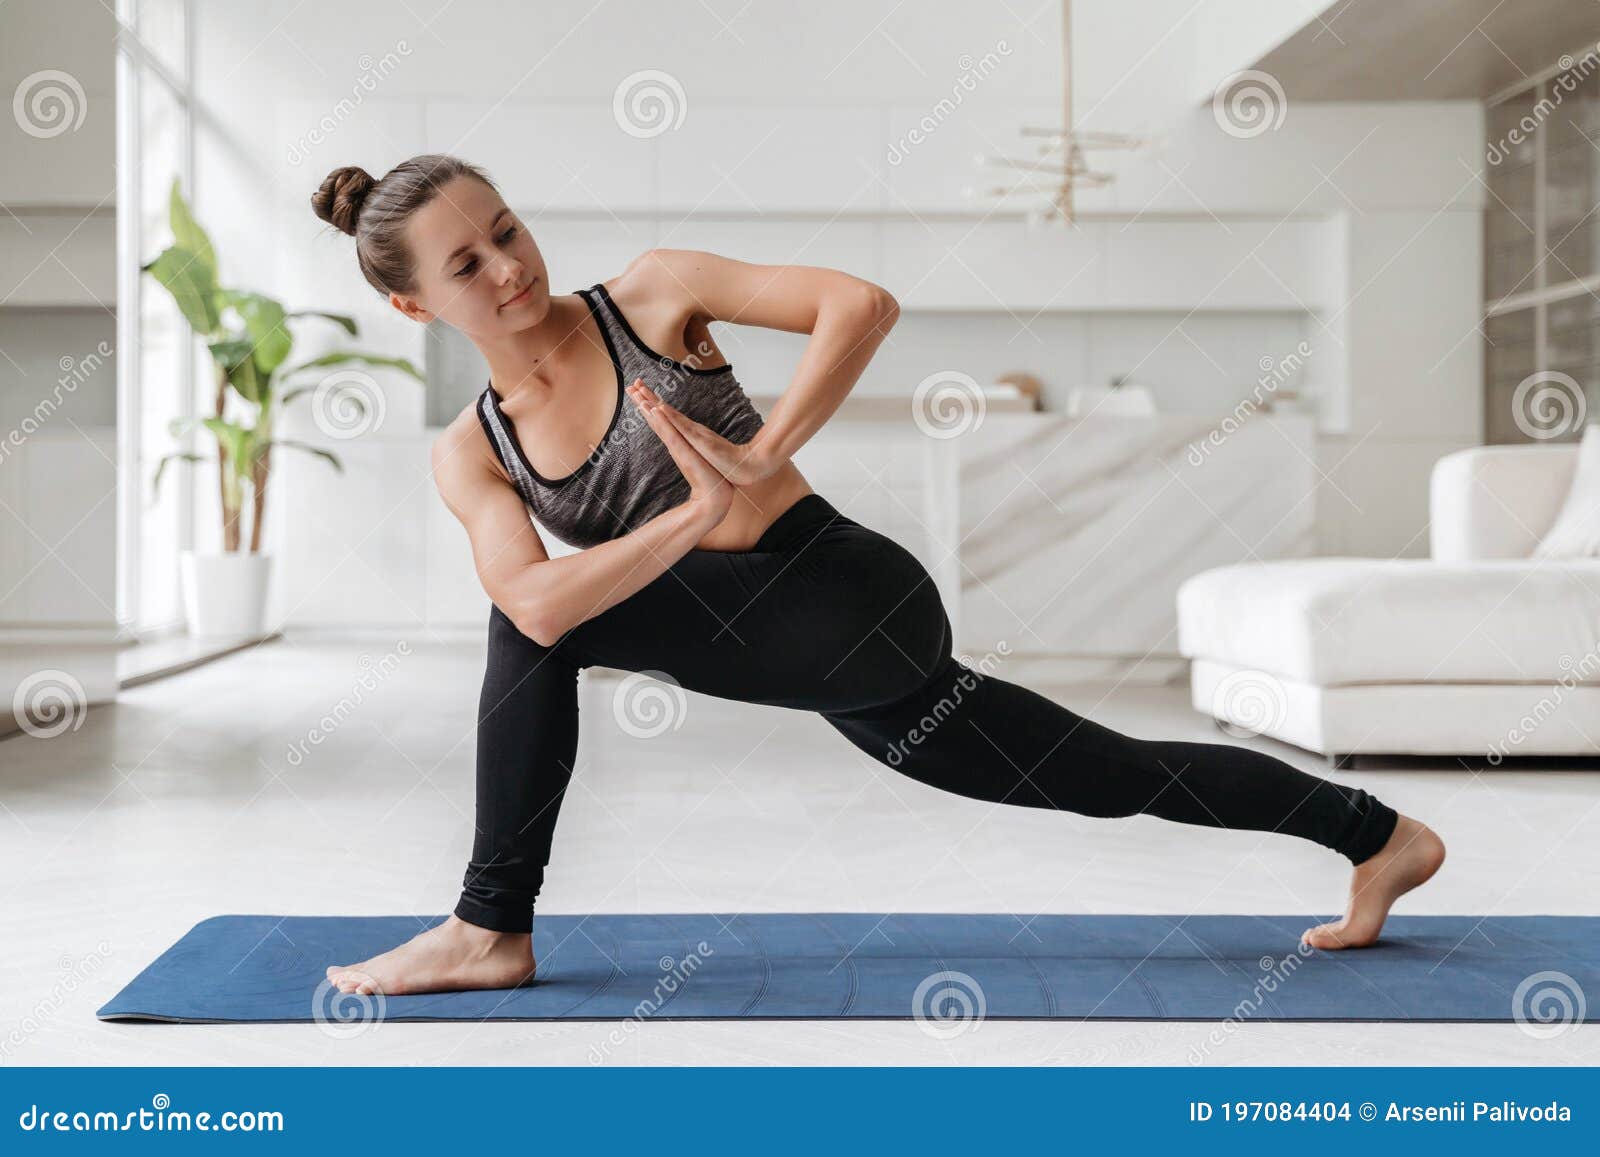 https://thumbs.dreamstime.com/z/hermosa-mujer-entrenando-en-casa-con-esterillas-para-hacer-ejercicio-deportista-forma-j%C3%B3ven-practicando-yoga-y-estirando-el-197084404.jpg